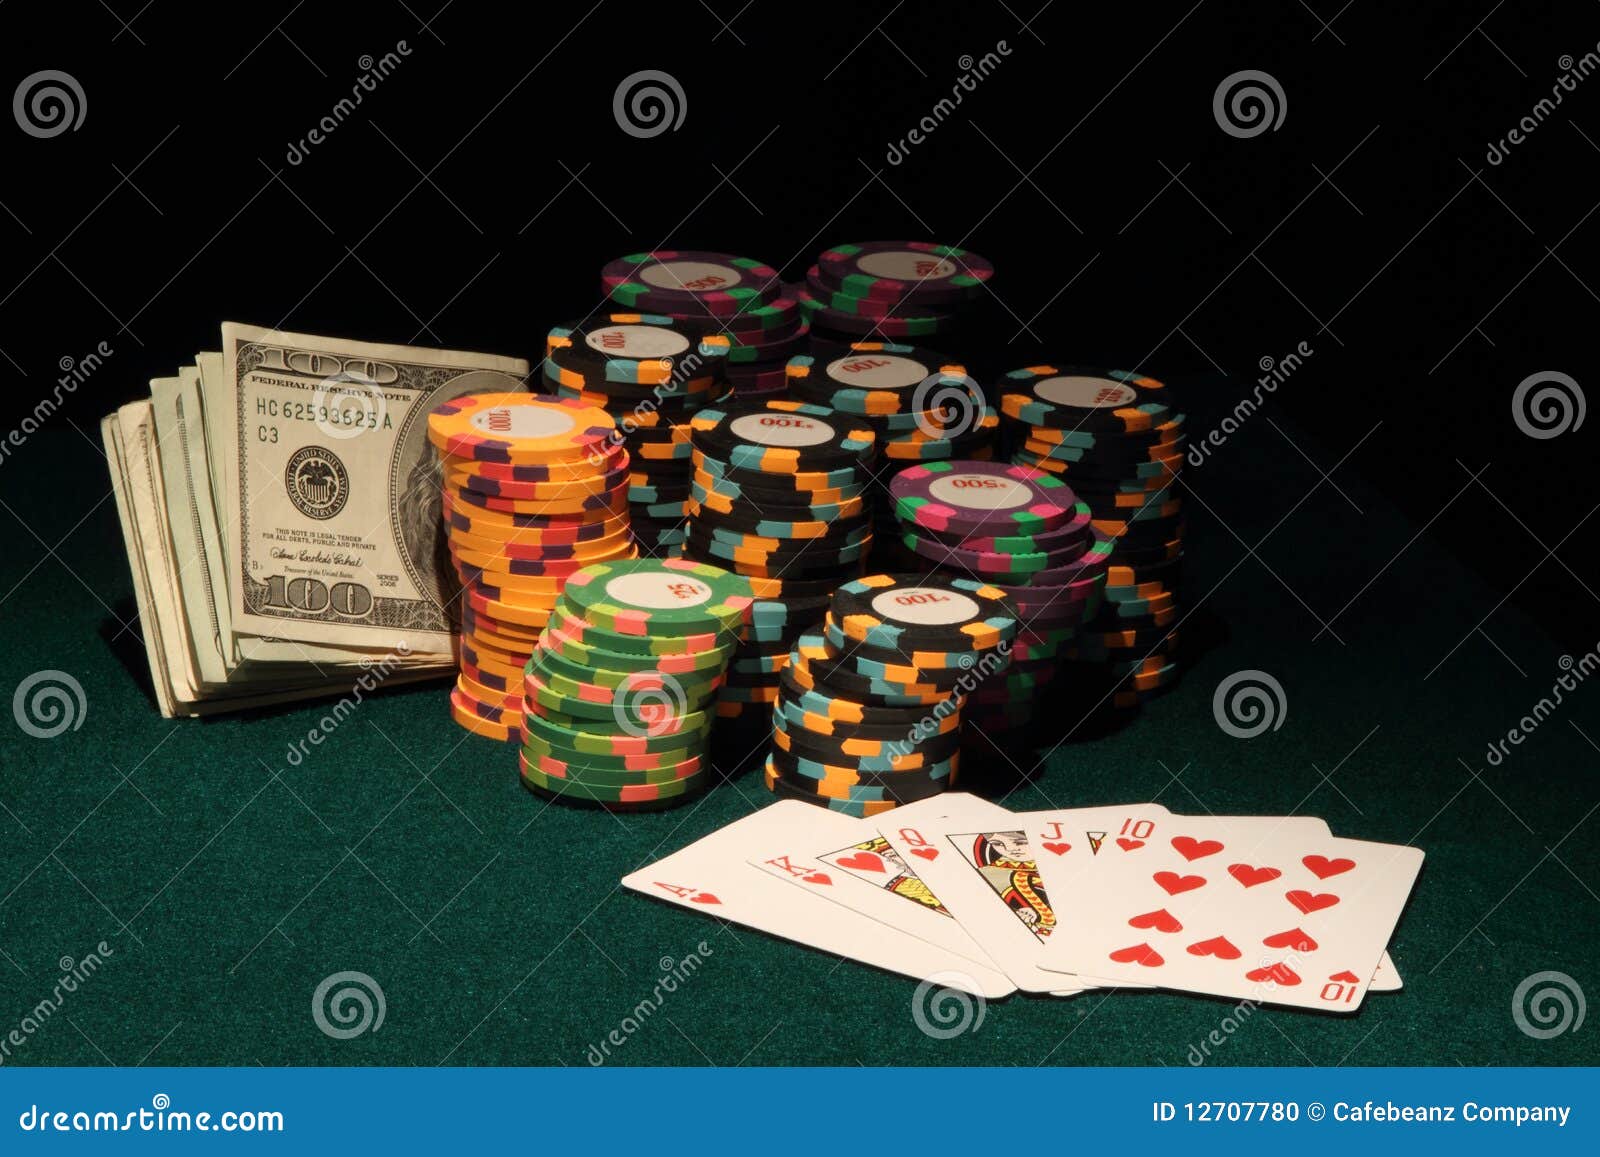 Encontrar clientes con poker online Parte B